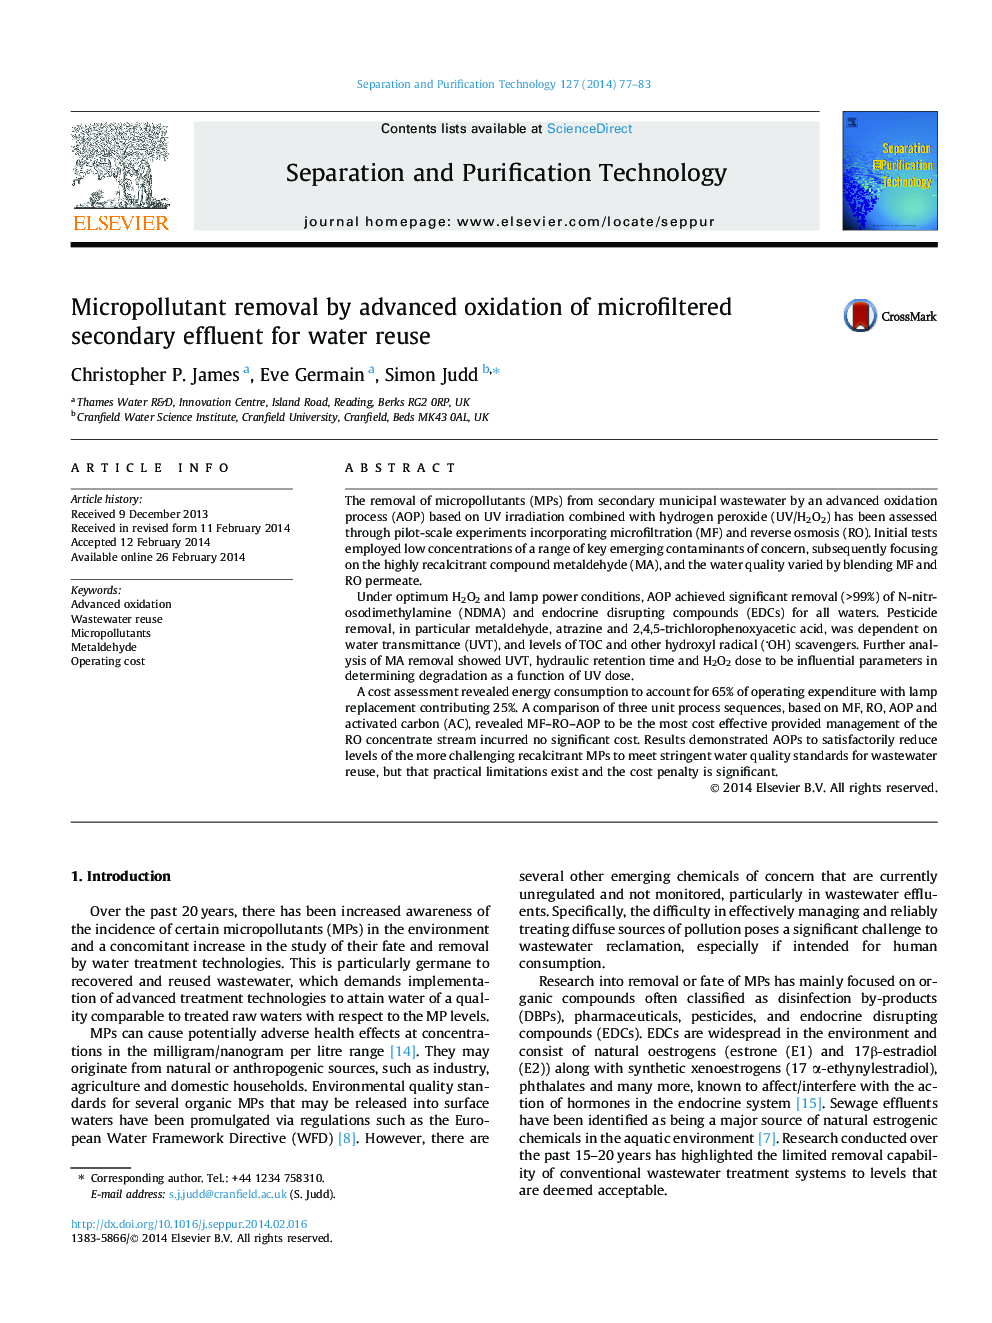 حذف مایکروپولولانت توسط اکسیداسیون پیشرفته از پسابهای ثانویه میکرو فیلتر شده برای استفاده مجدد آب 